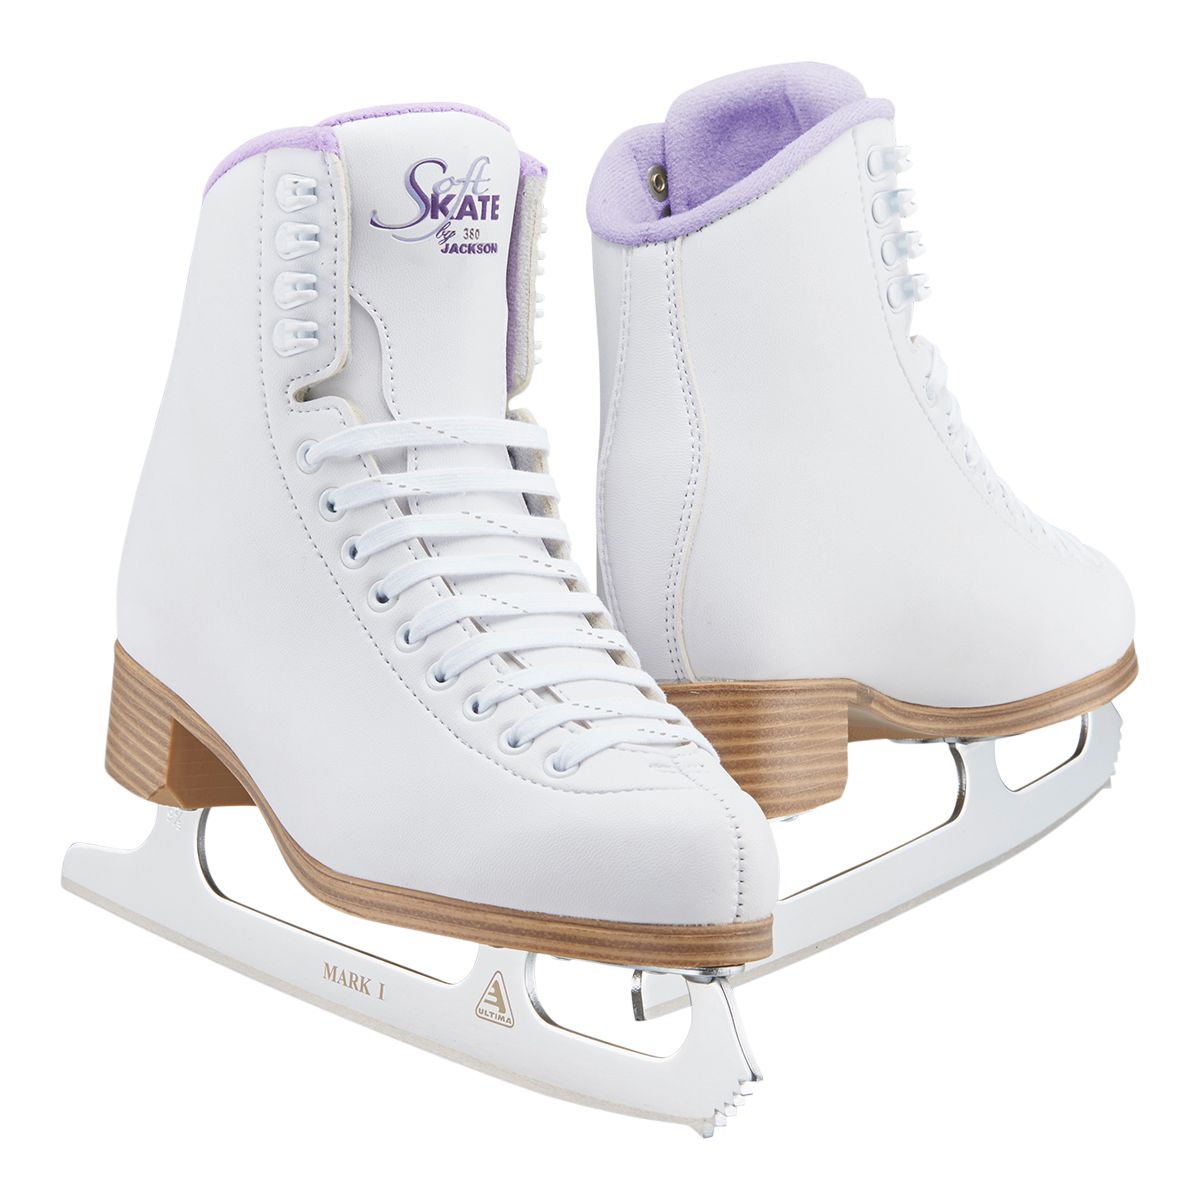 Image of Jackson Girls' 381 Soft Figure Skates